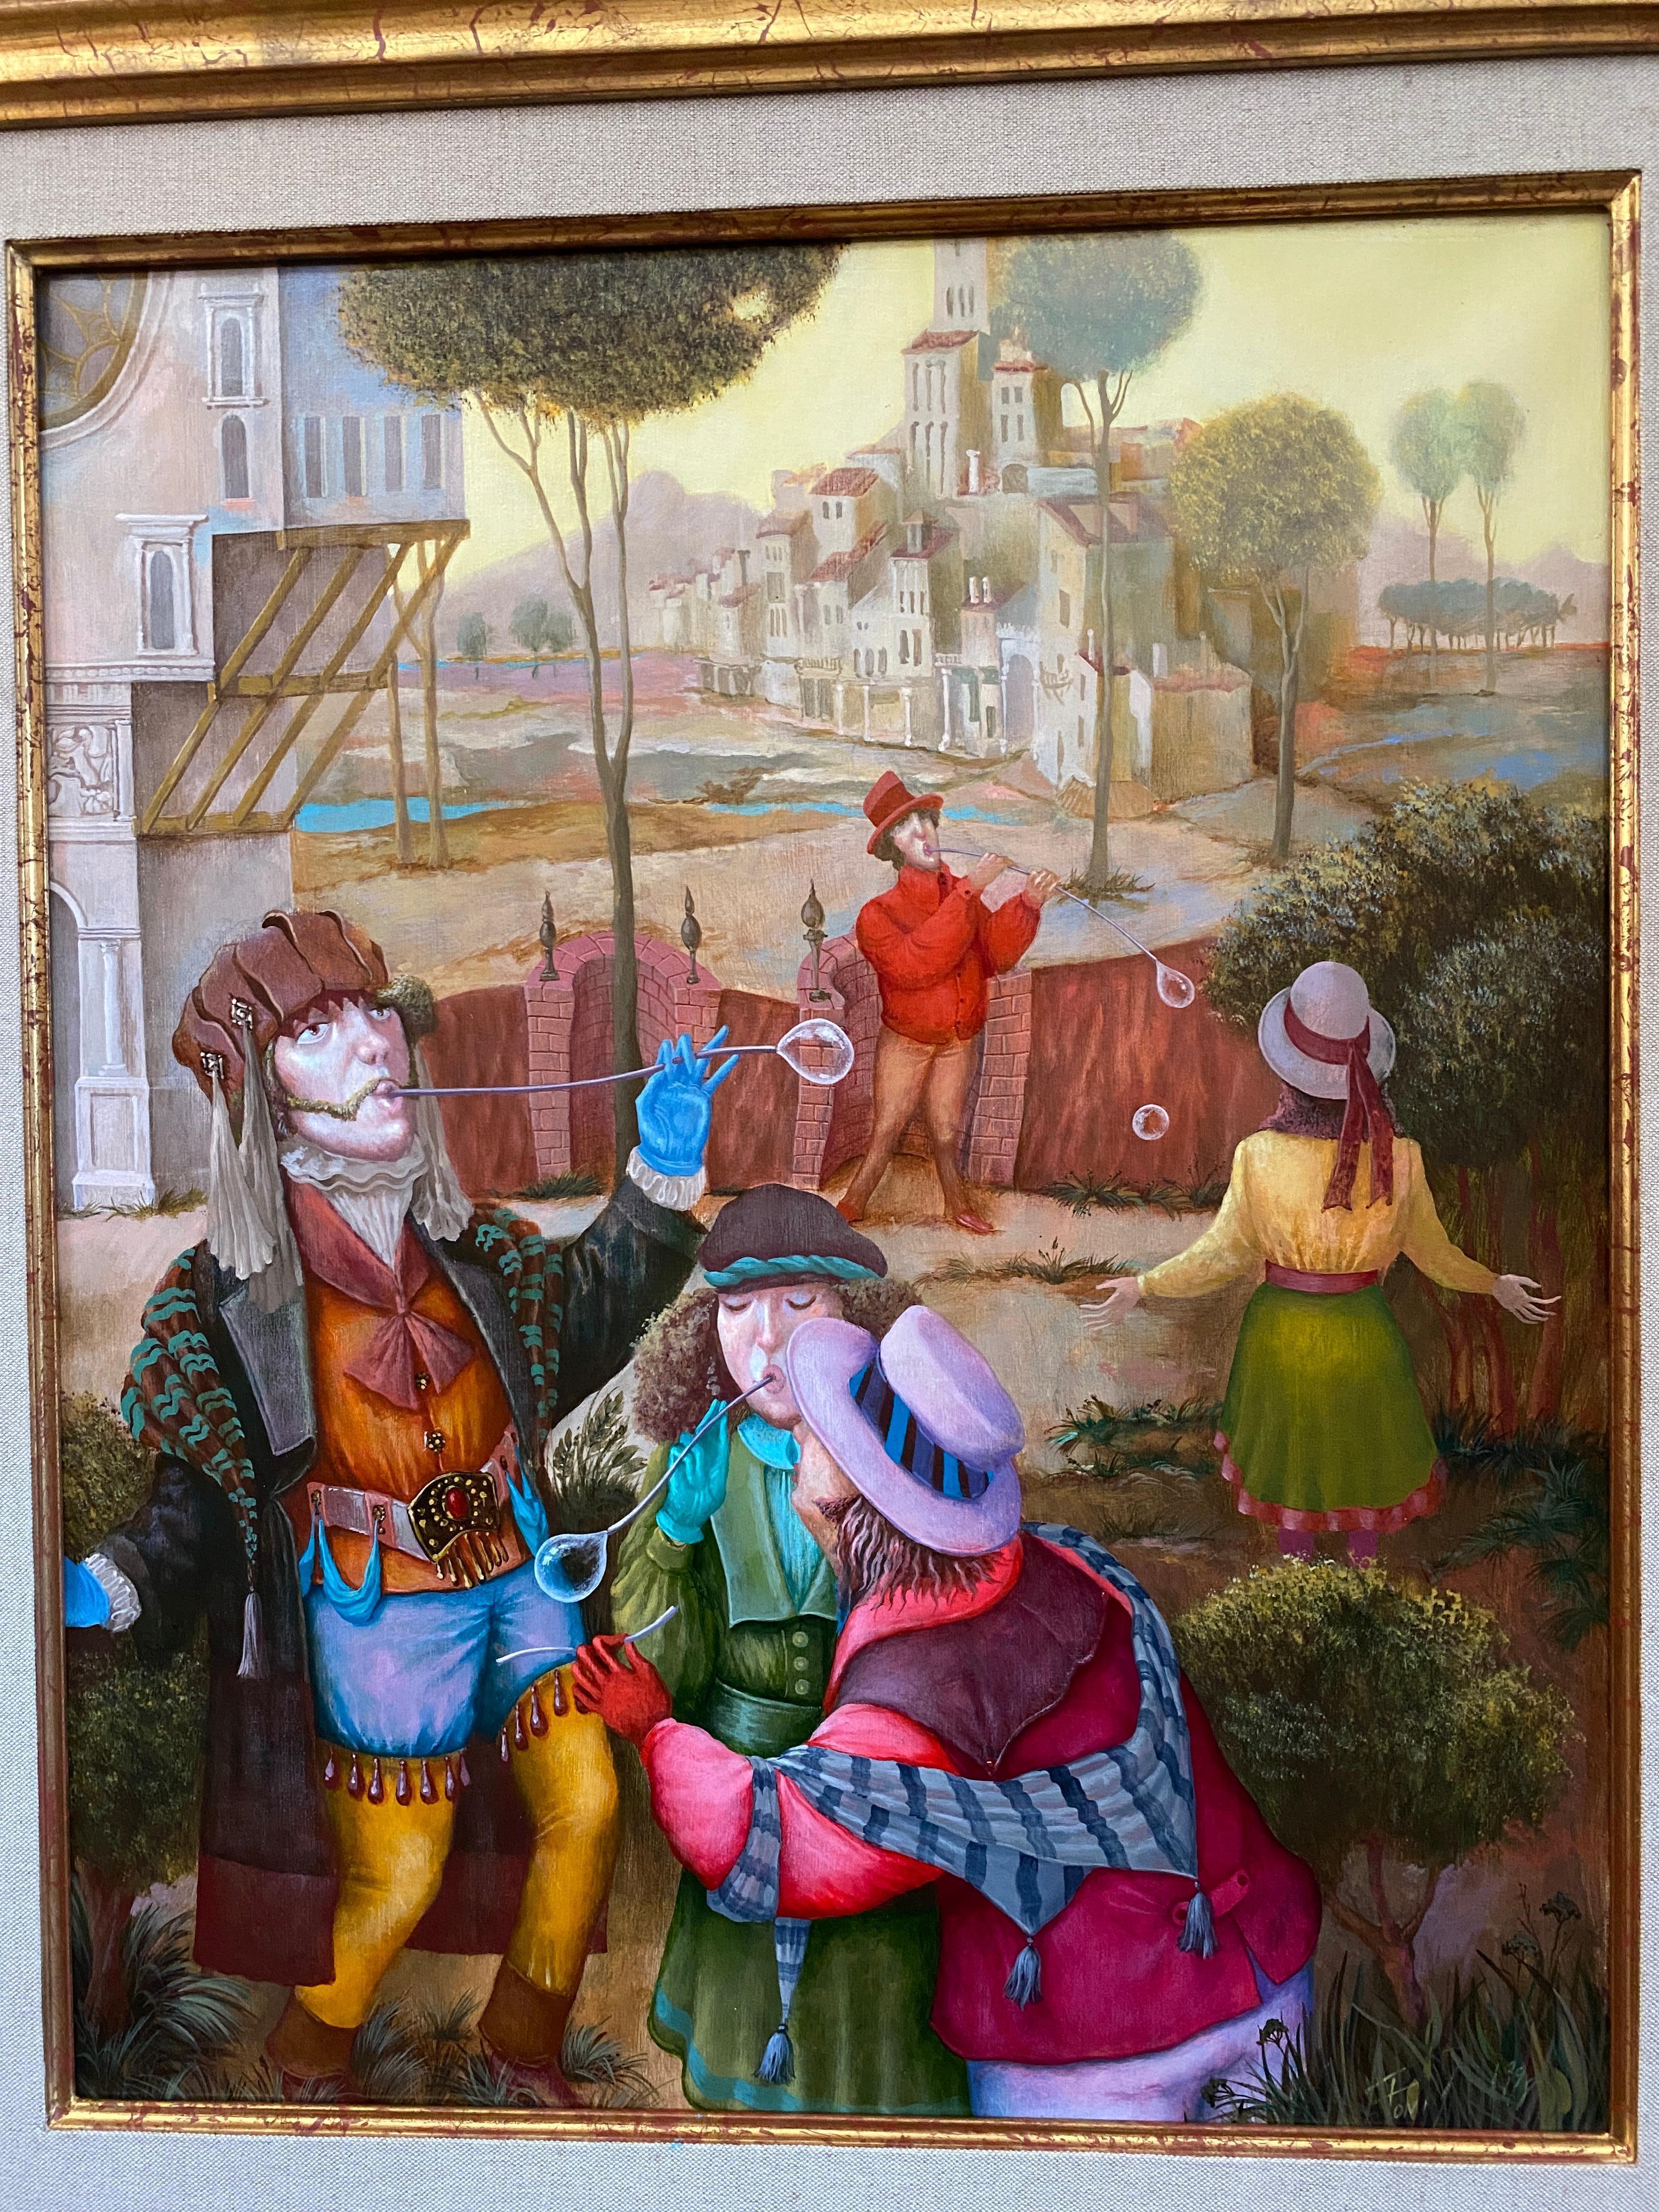 The Bubblers (Los Burbujeros..) Peinture figurative. Paysage avec des personnages dans un décor de la Renaissance.
Acrylique sur toile.
Auteur : Igor Fomin.
Mesures en centimètres : 65 x 54 x 3 cm. / Encadré : 94 x 83 x 5 cm.
En pouces : 25.56 x